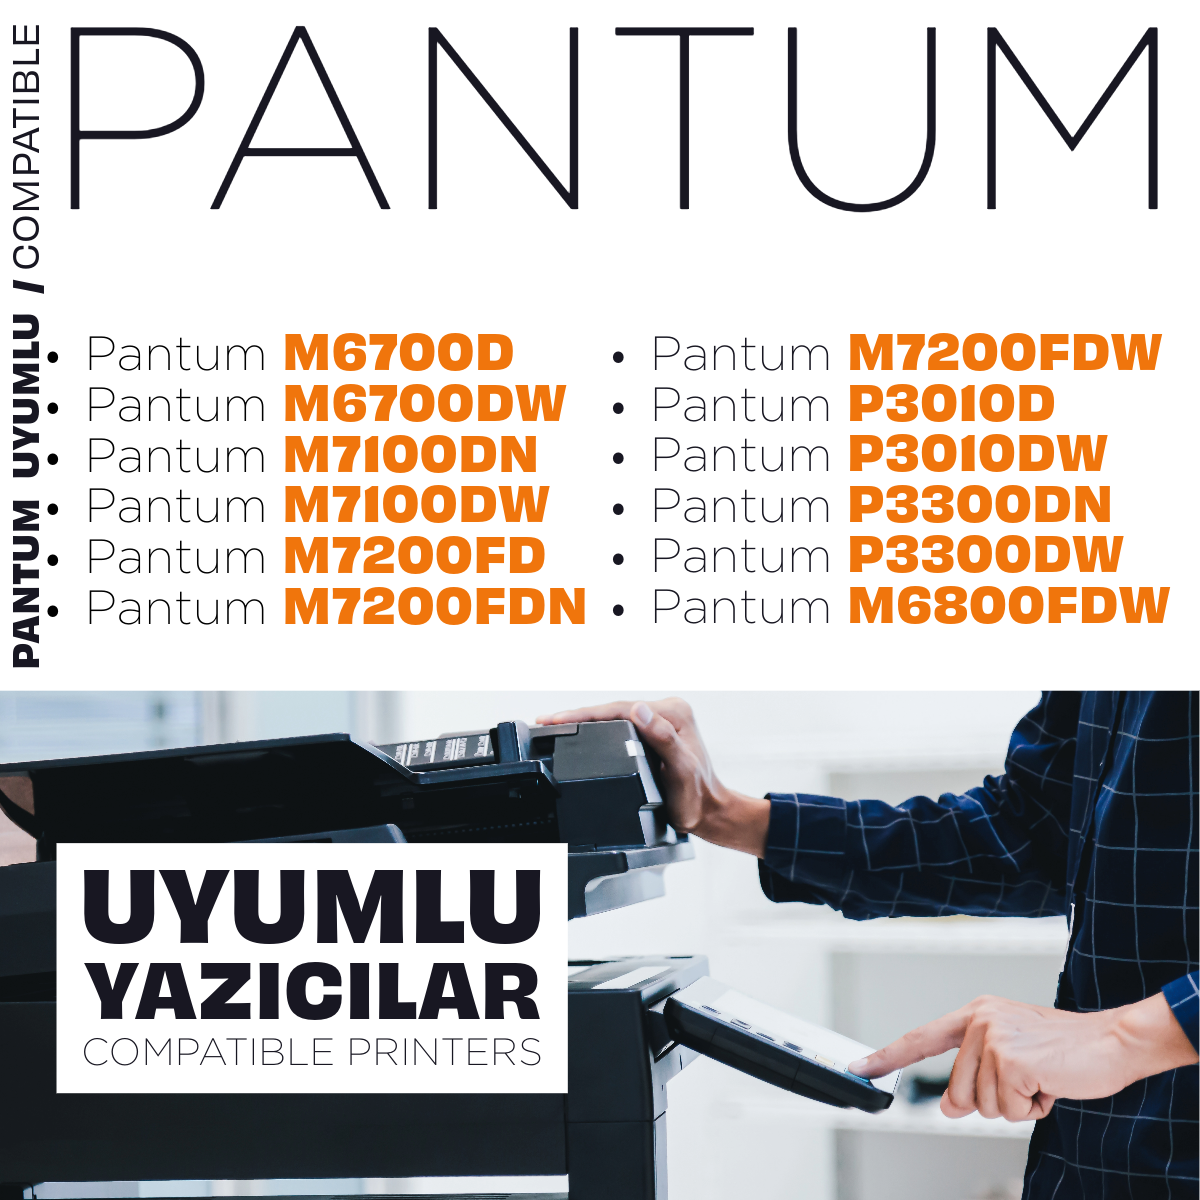 Tonermax Pantum TL410 / TL411X Uyumlu Toner Tozu 1000 GR. / M6700 / M7100 / M7200 / P3010 / P3300 / M6800